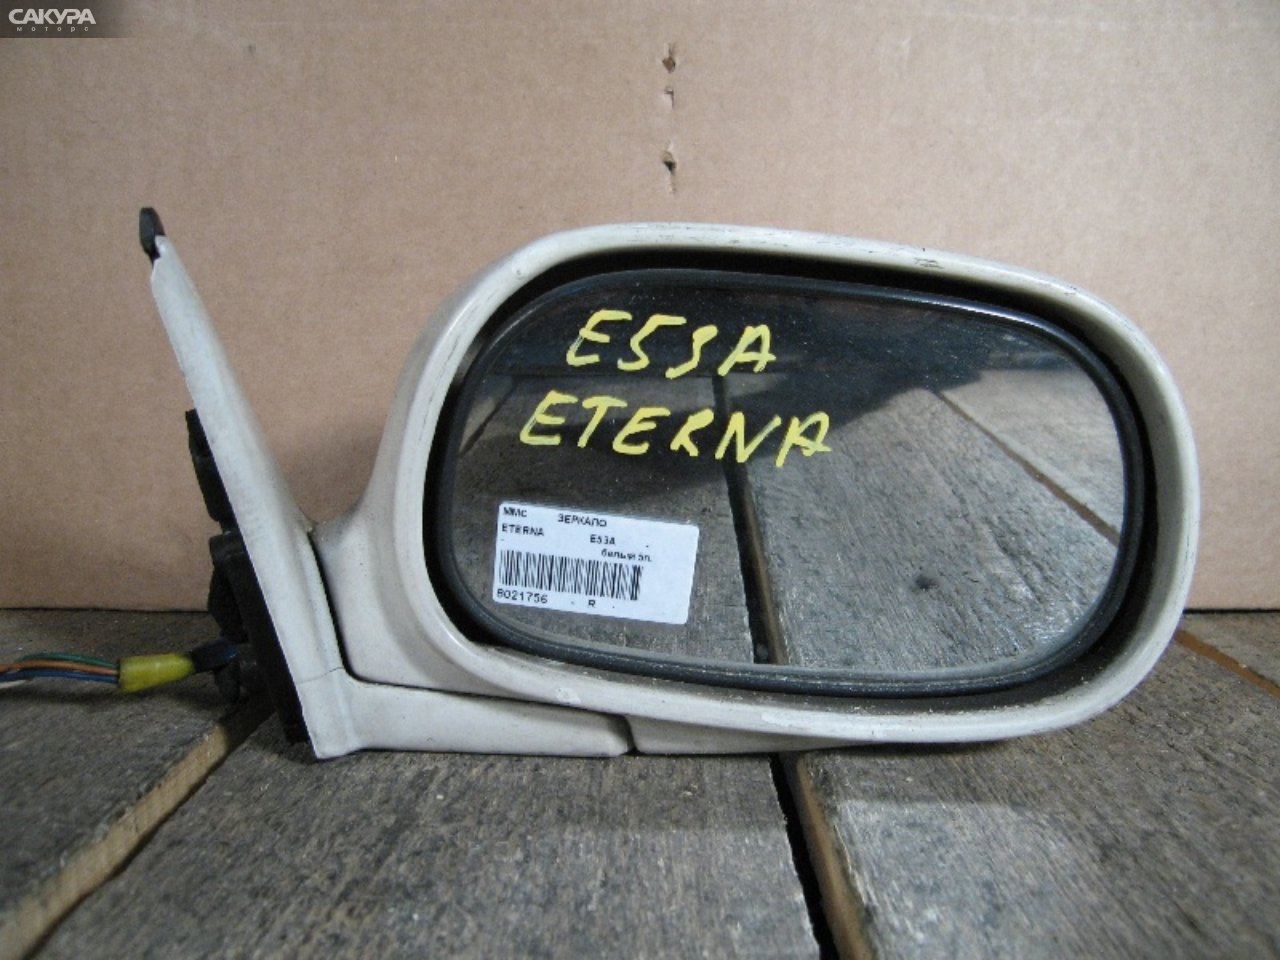 Зеркало боковое правое Mitsubishi Eterna E53A: купить в Сакура Абакан.